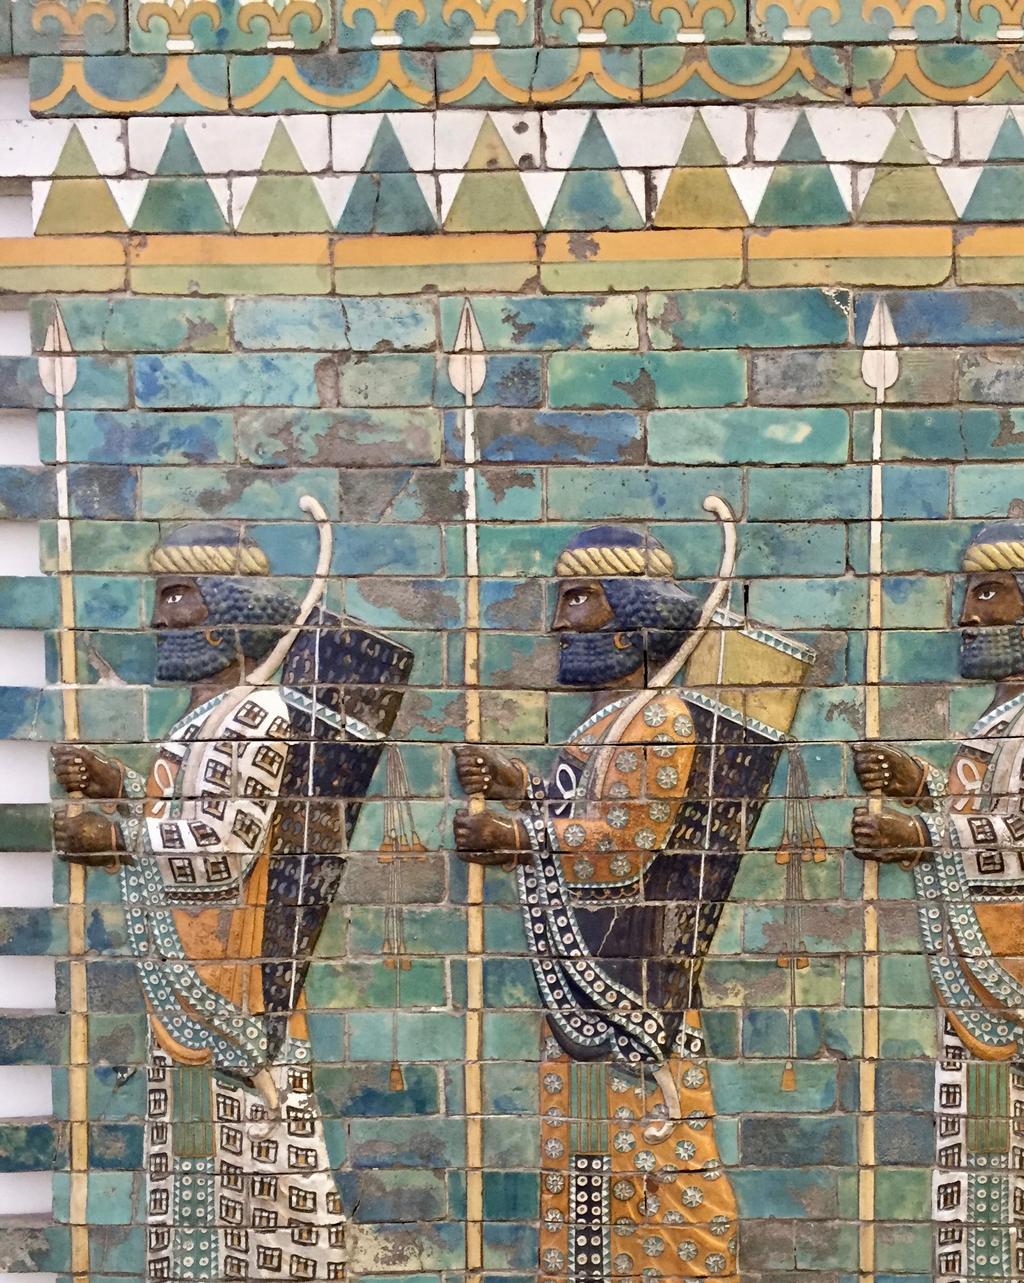 Tre väktare från Ishtarporten som var en av åtta befästa stadsportar i Babylon.